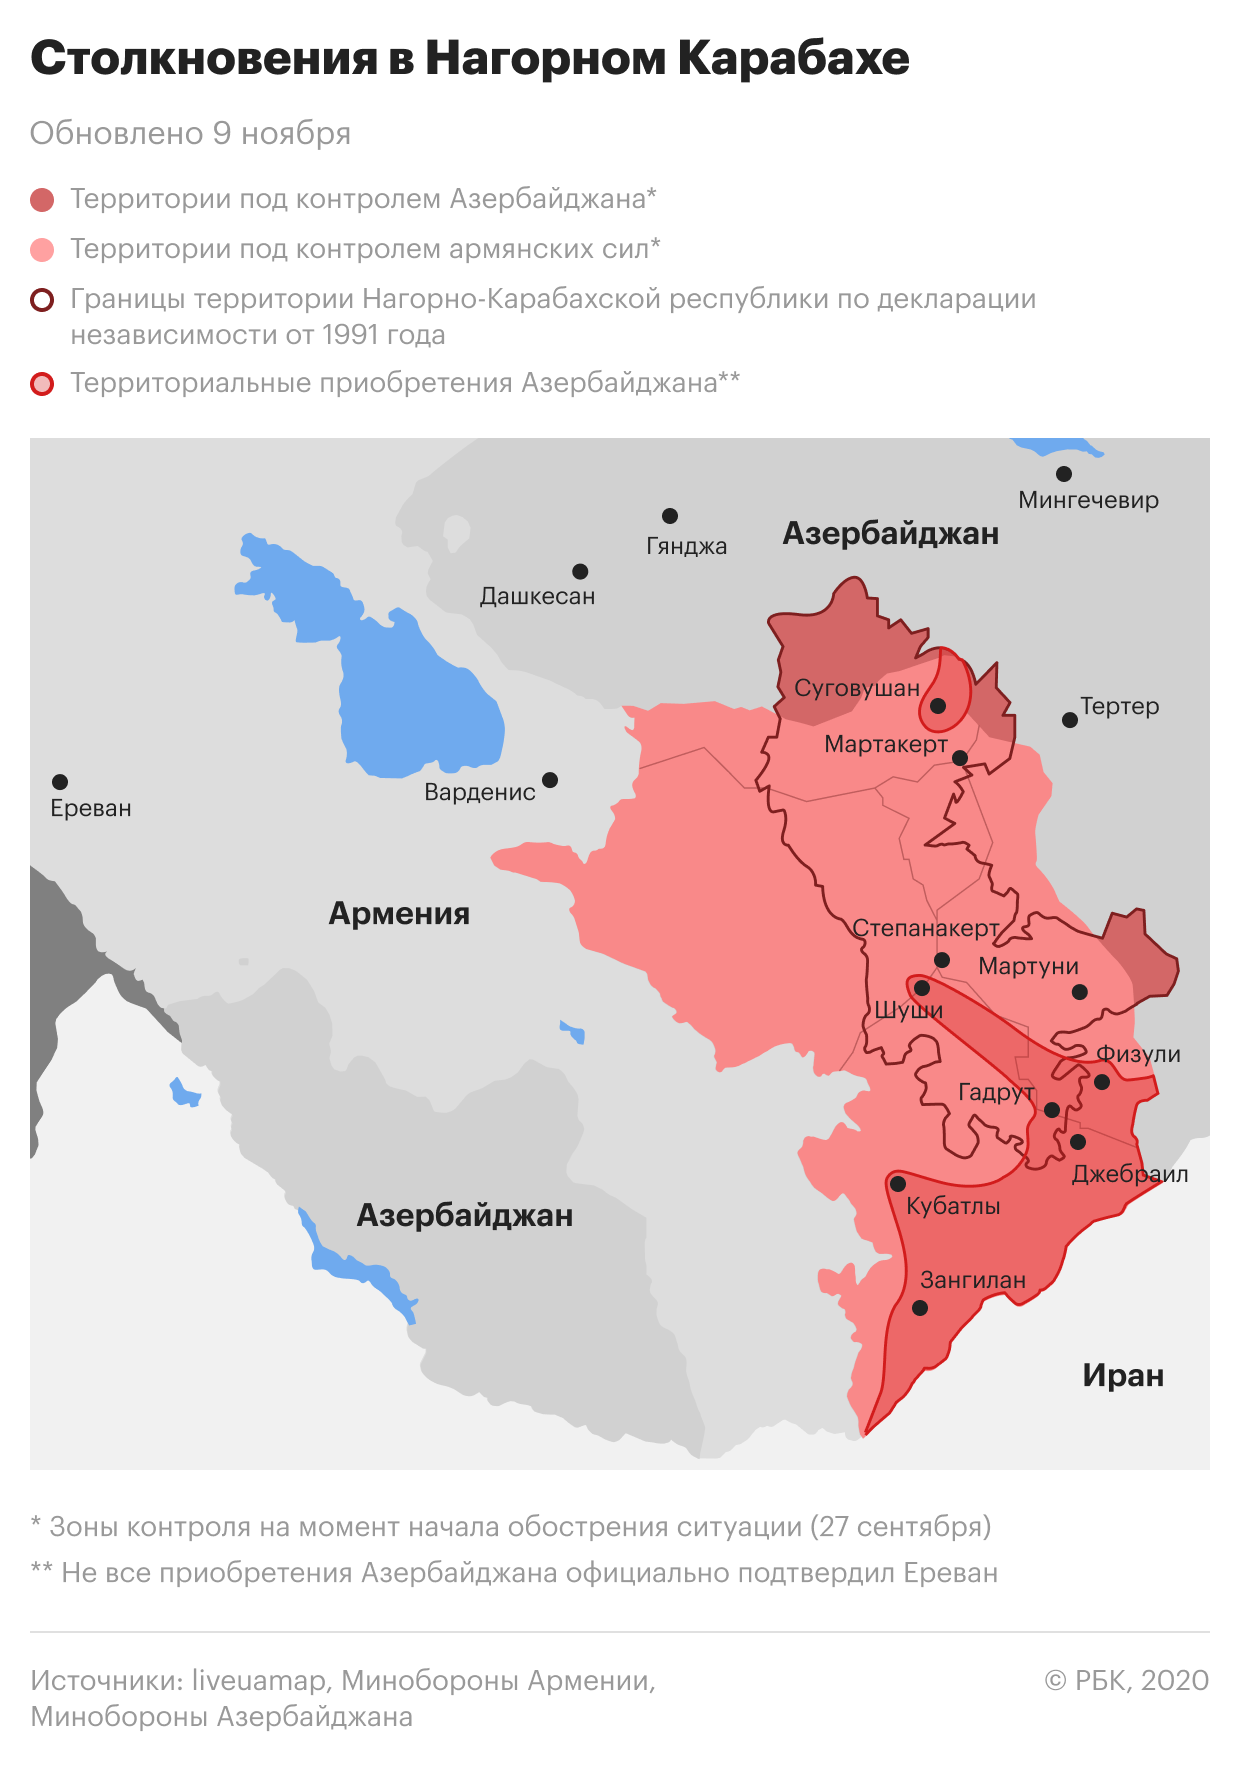 Обострение конфликта в Нагорном Карабахе. Карта на 9 ноября